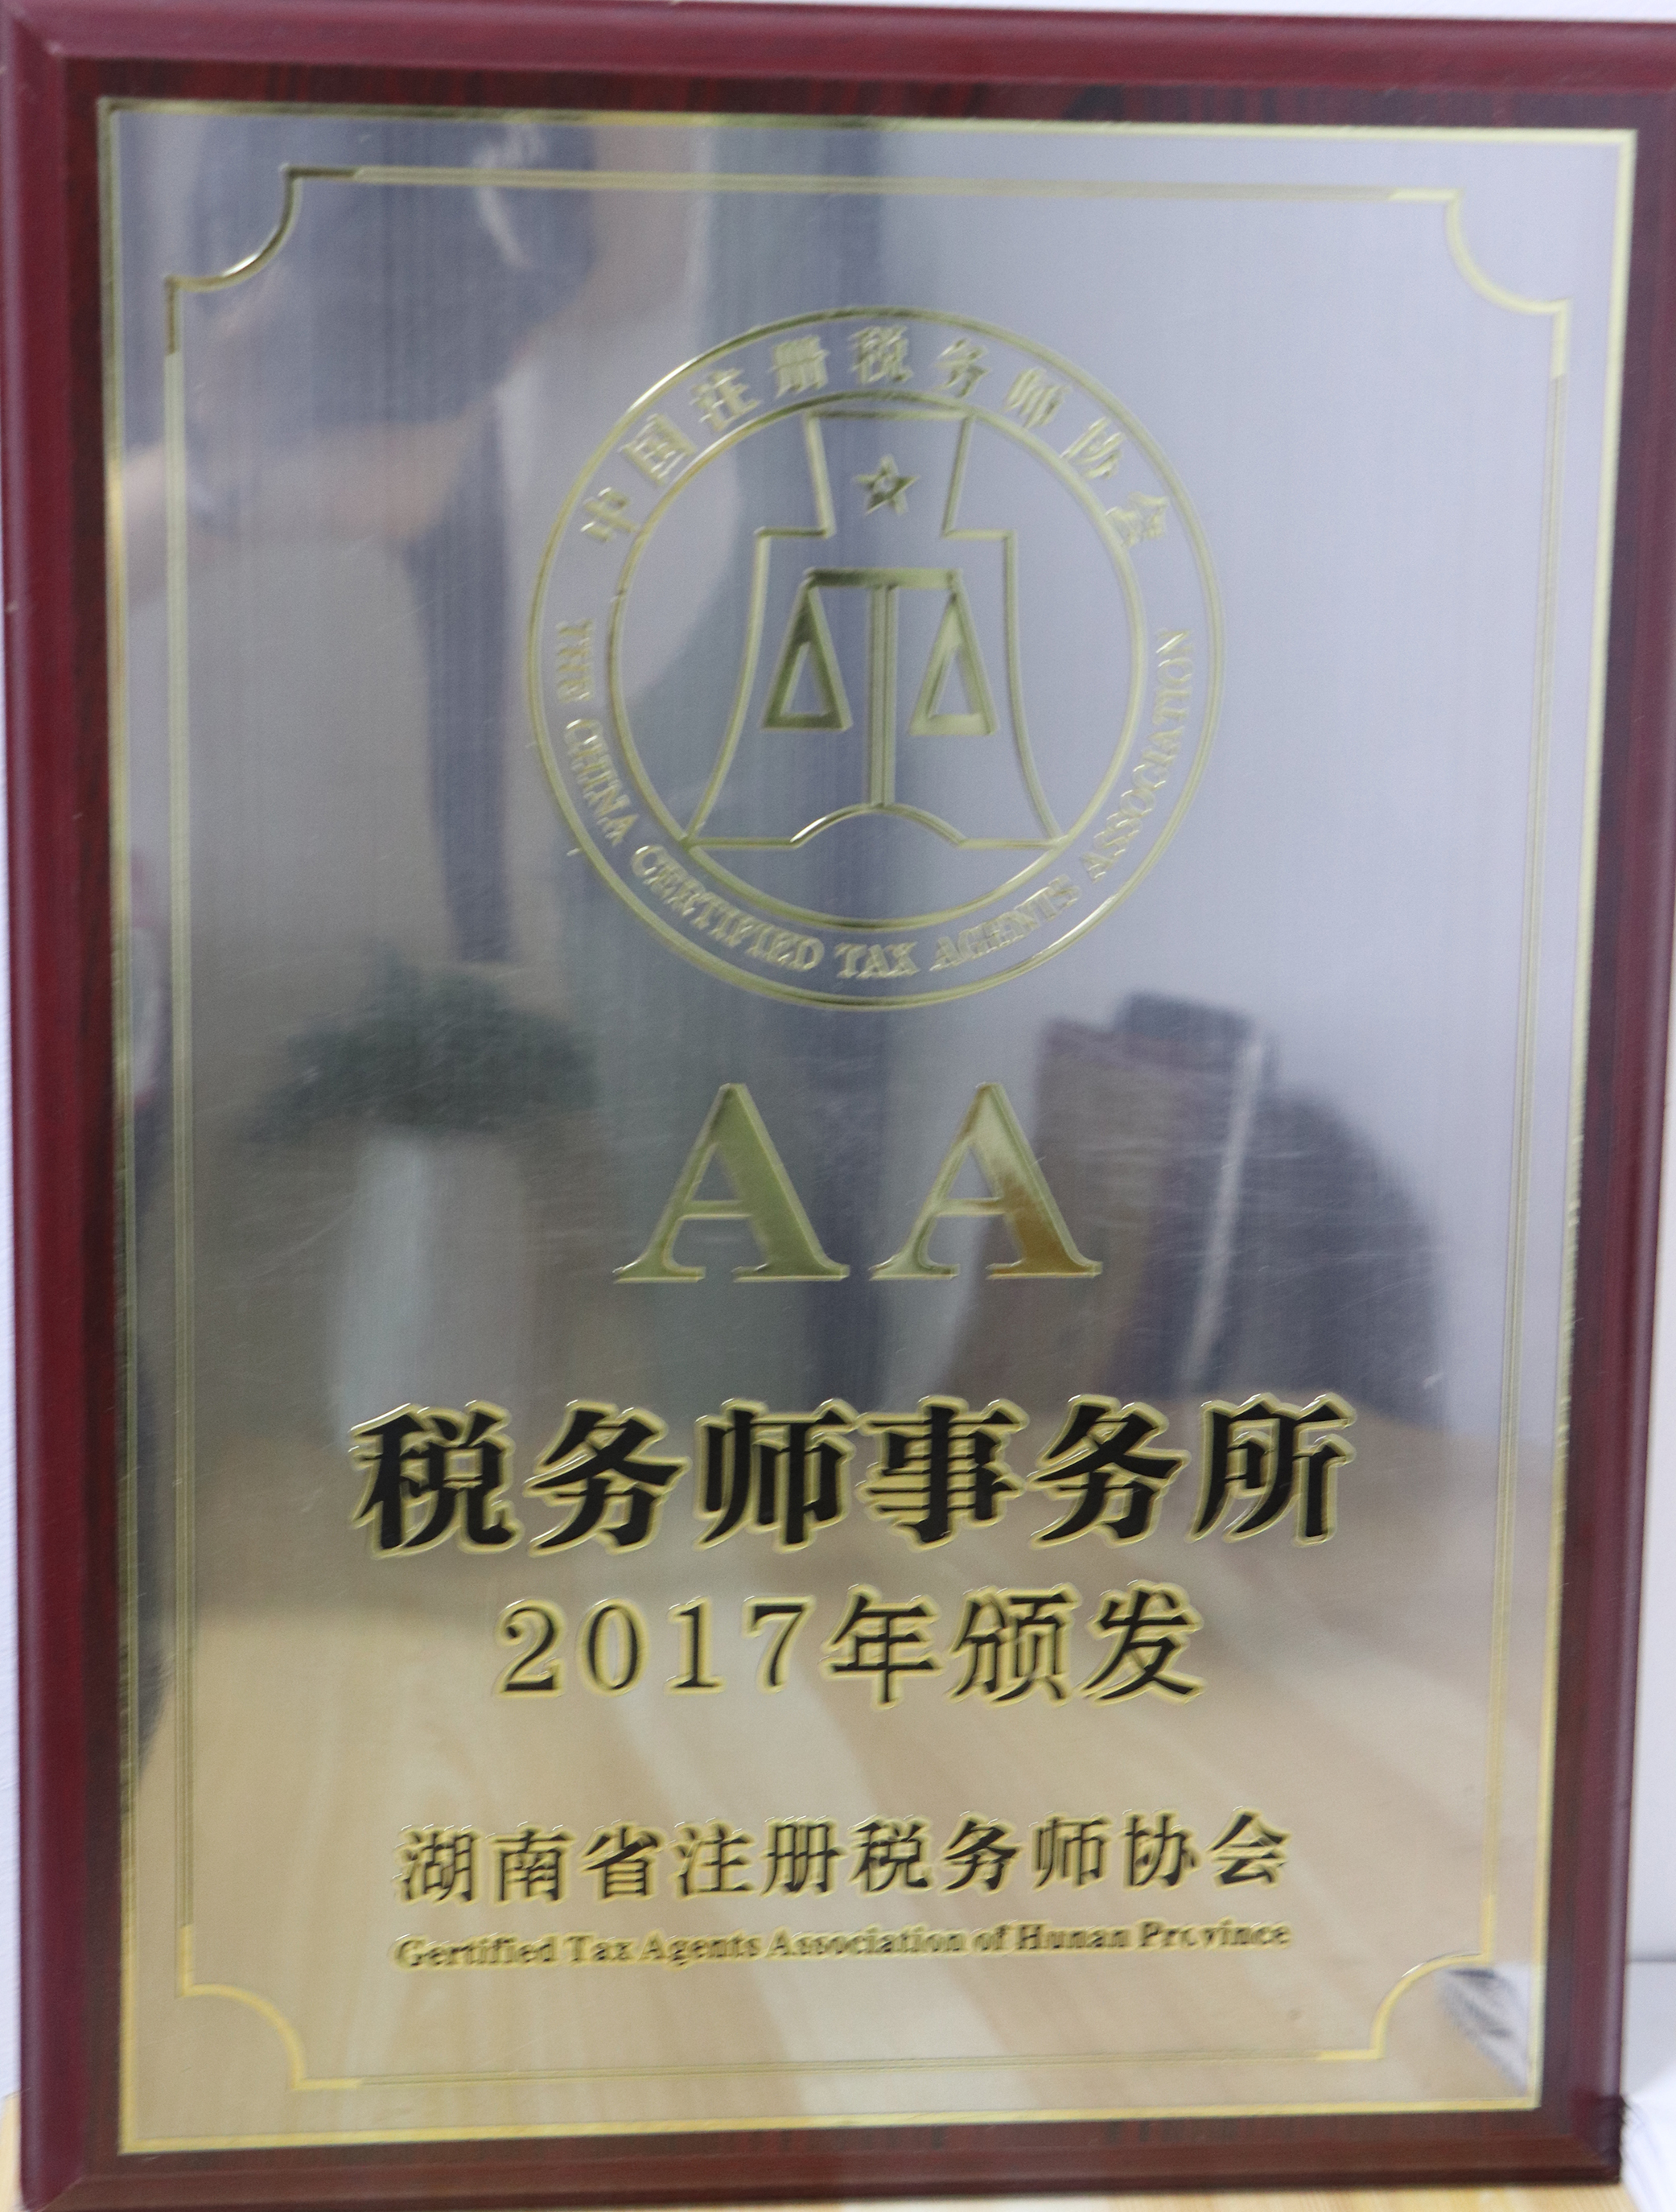 湖南省注册税务师协会2017年颁发AA税务师事务所